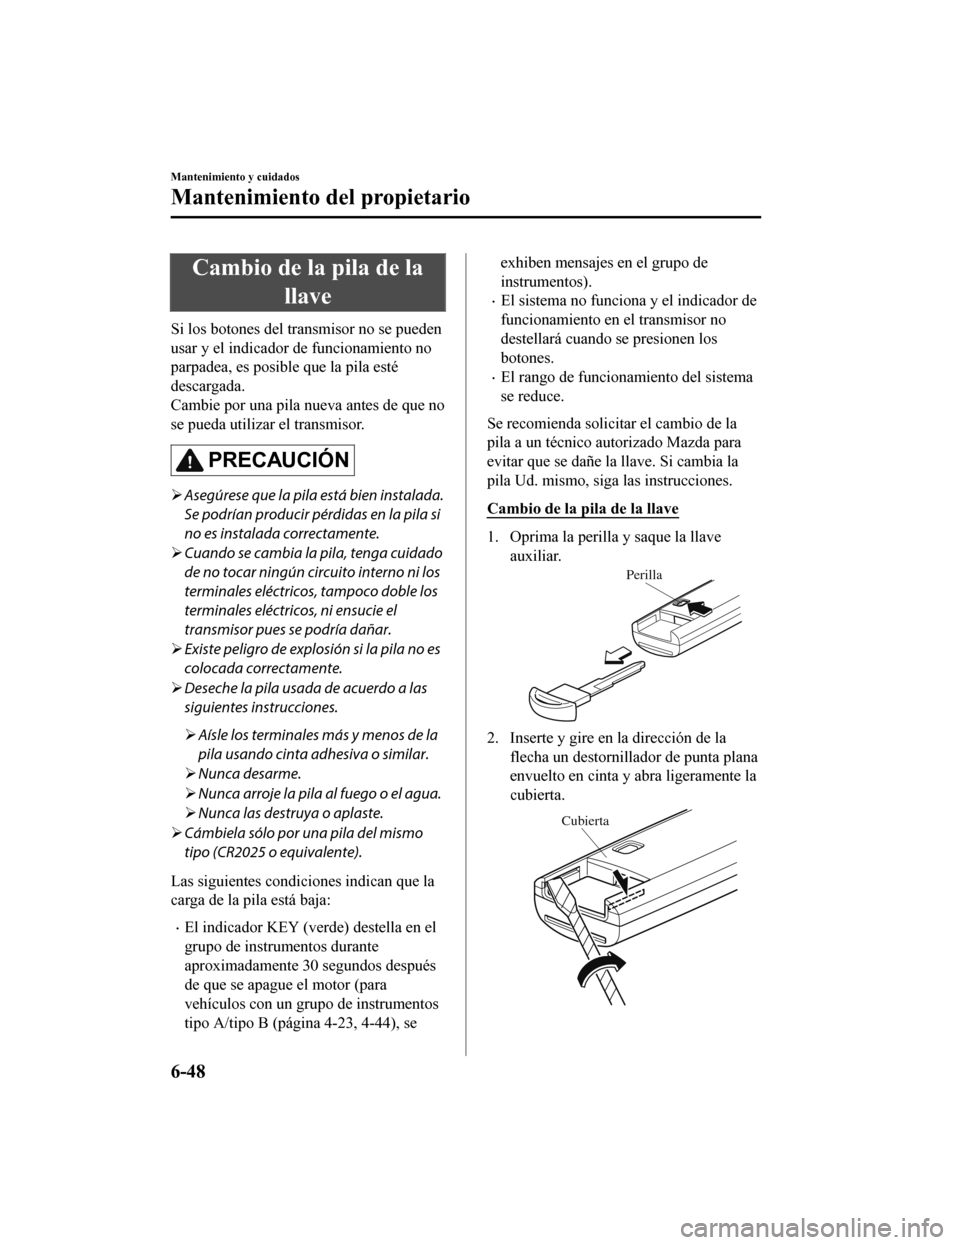 MAZDA MODEL CX-5 2020  Manual del propietario (in Spanish) Cambio de la pila de lallave
Si los botones del transmisor no se pueden
usar y el indicador  de funcionamiento no
parpadea, es posible que la pila esté
descargada.
Cambie por una pila nueva antes de 